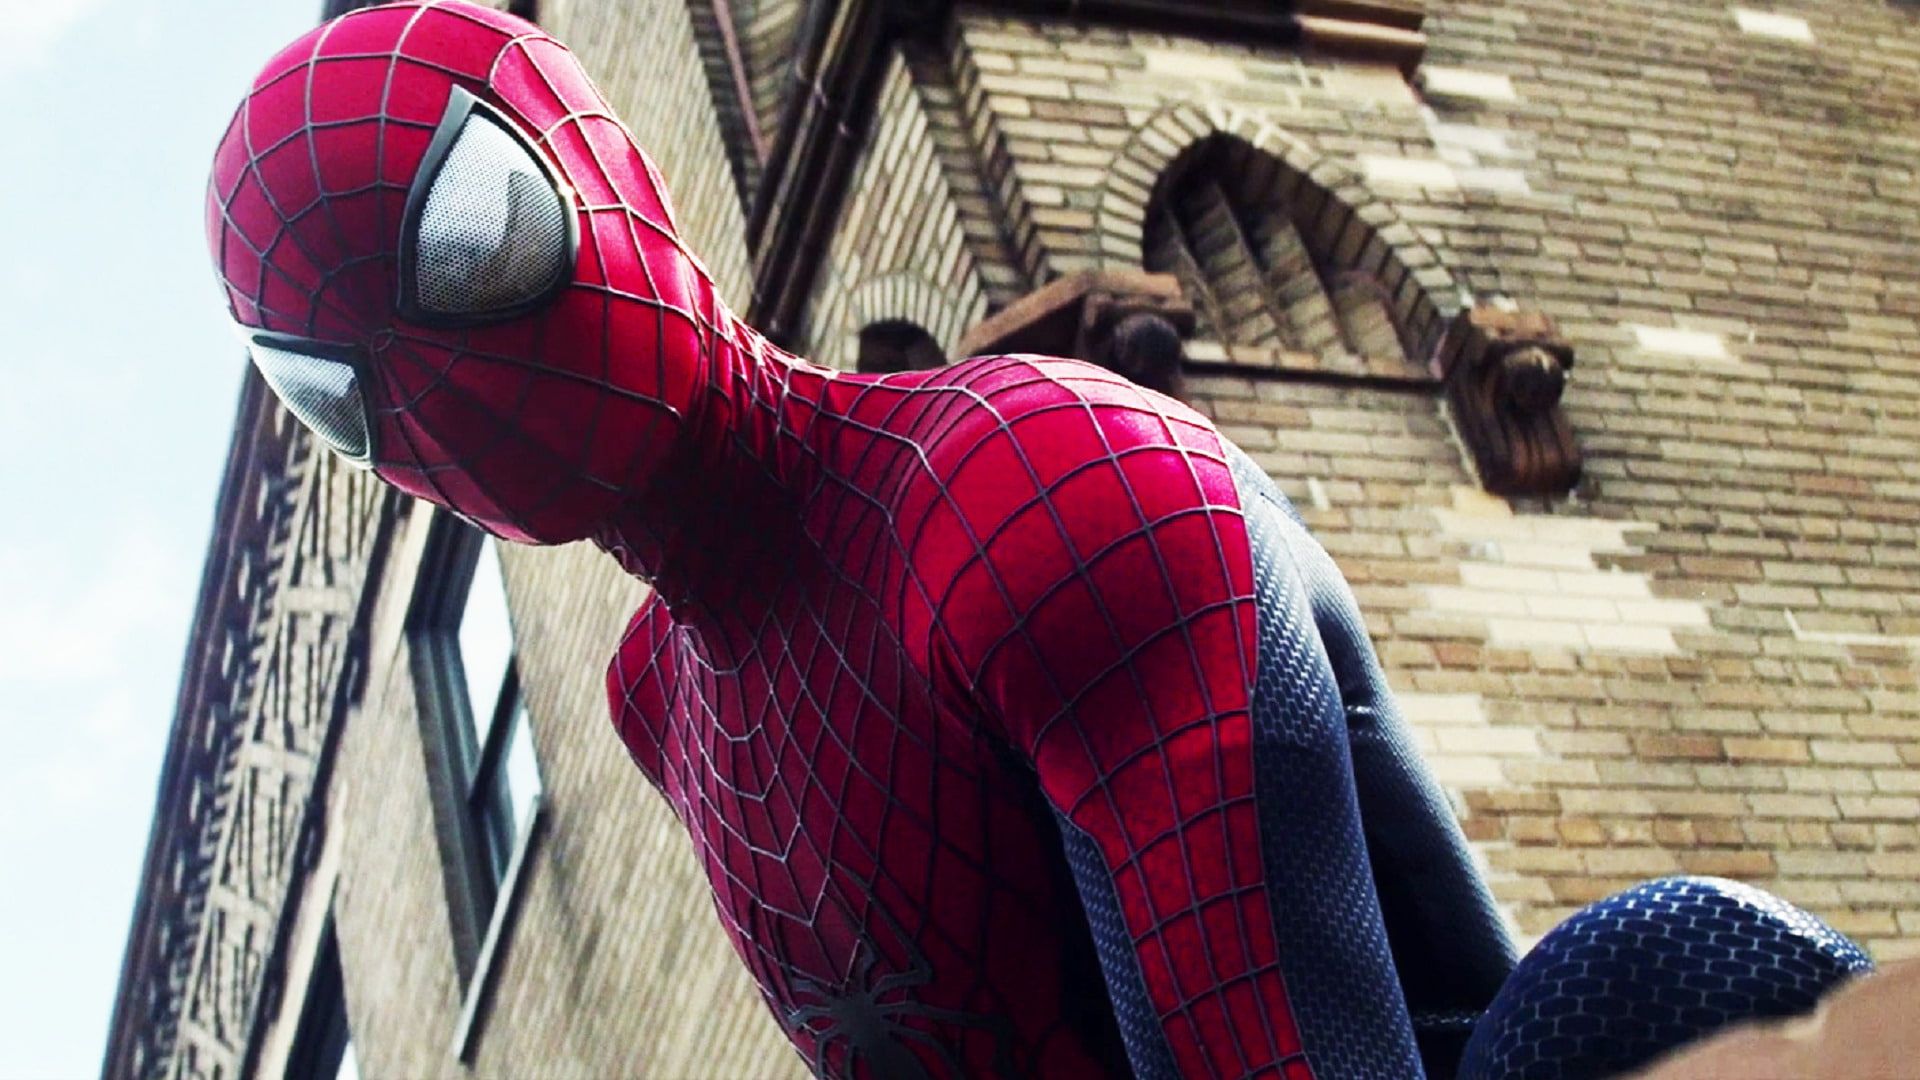 Spider Man The Amazing Spider Man 2 P #wallpaper #hdwallpaper #desktop. Spiderman, Spider Man Amazing Spider